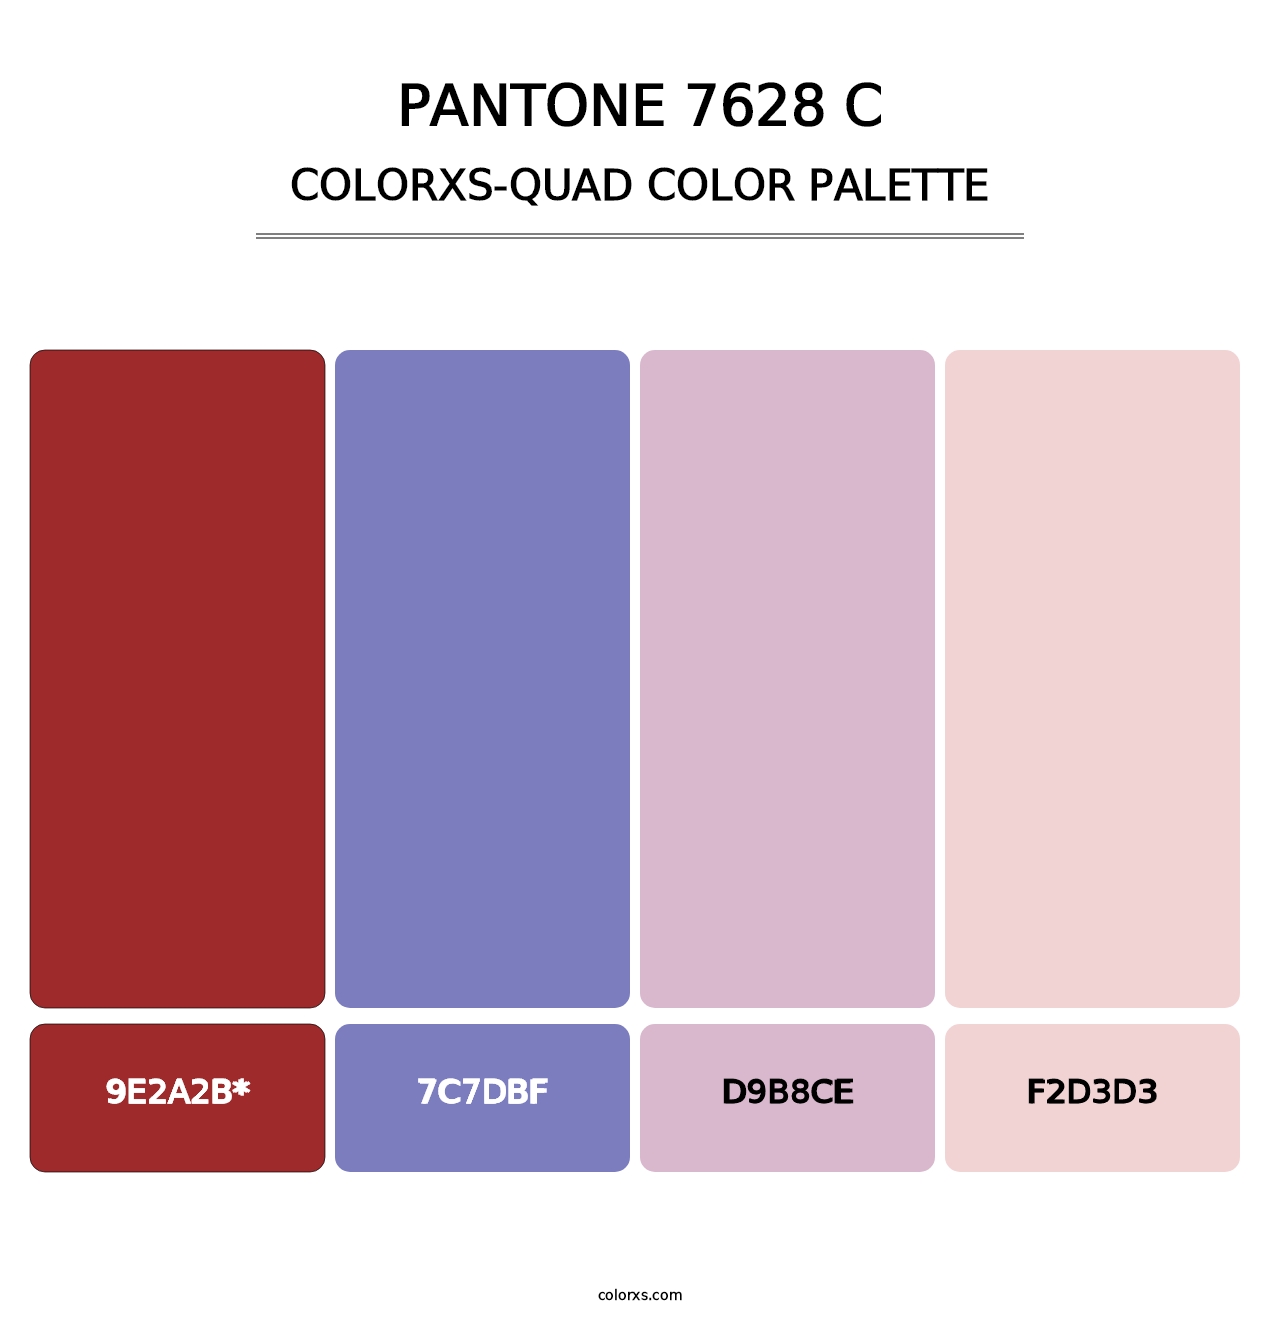 PANTONE 7628 C - Colorxs Quad Palette